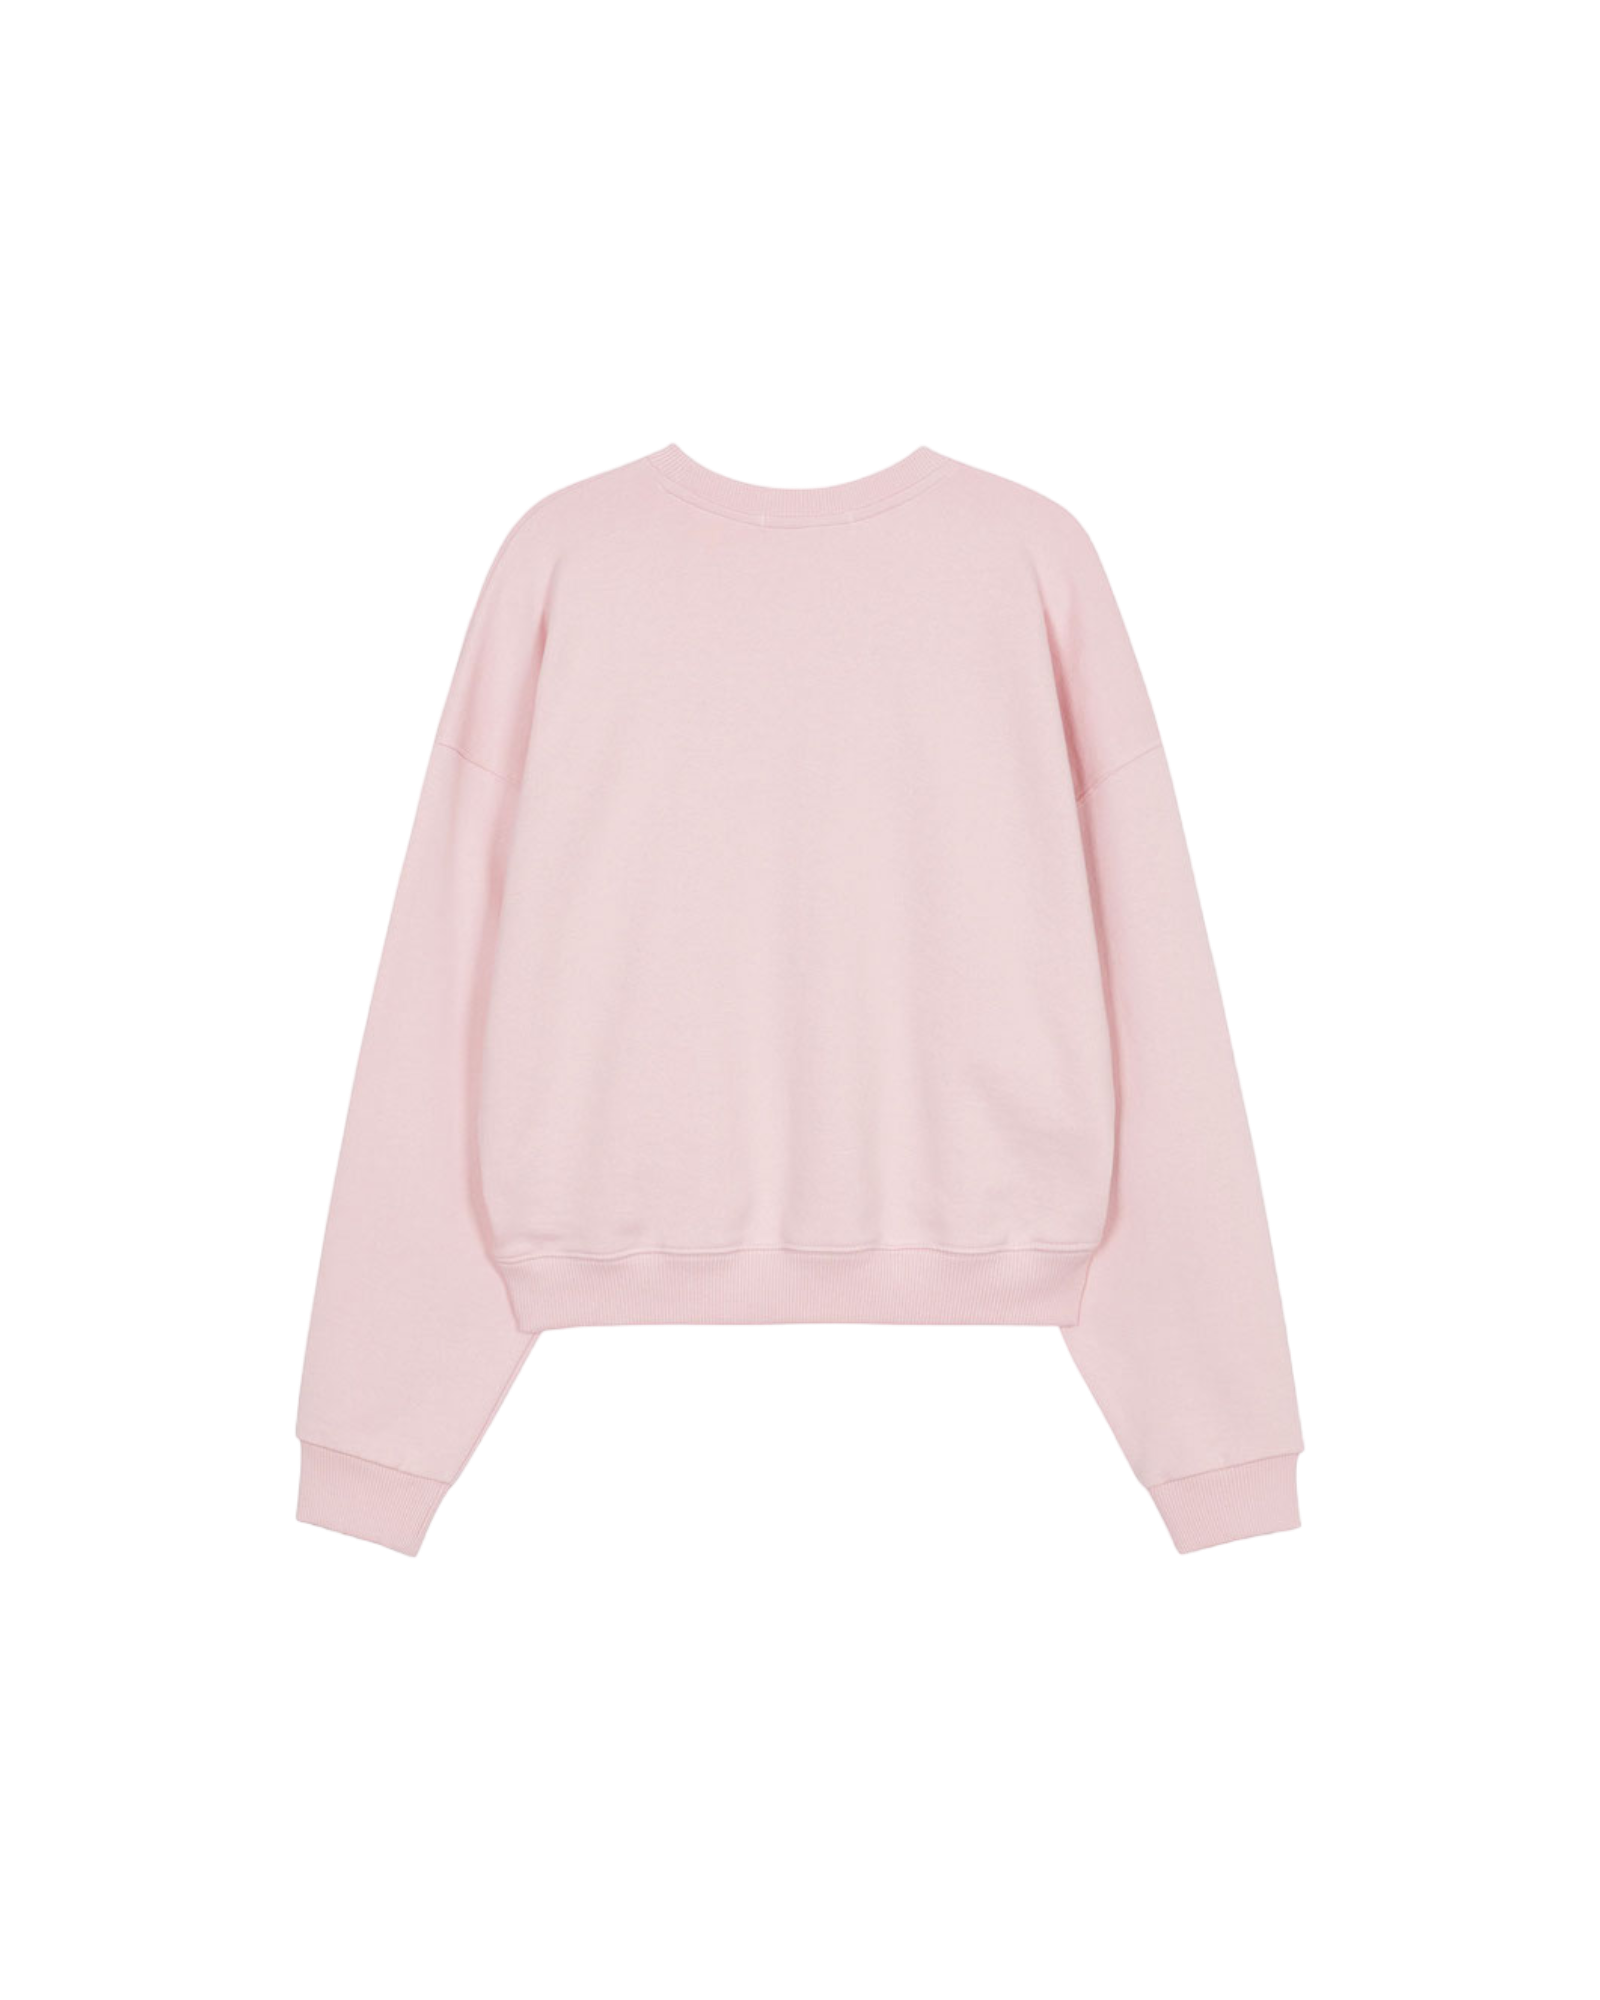 Raive Graphic Sweatshirt In Pink